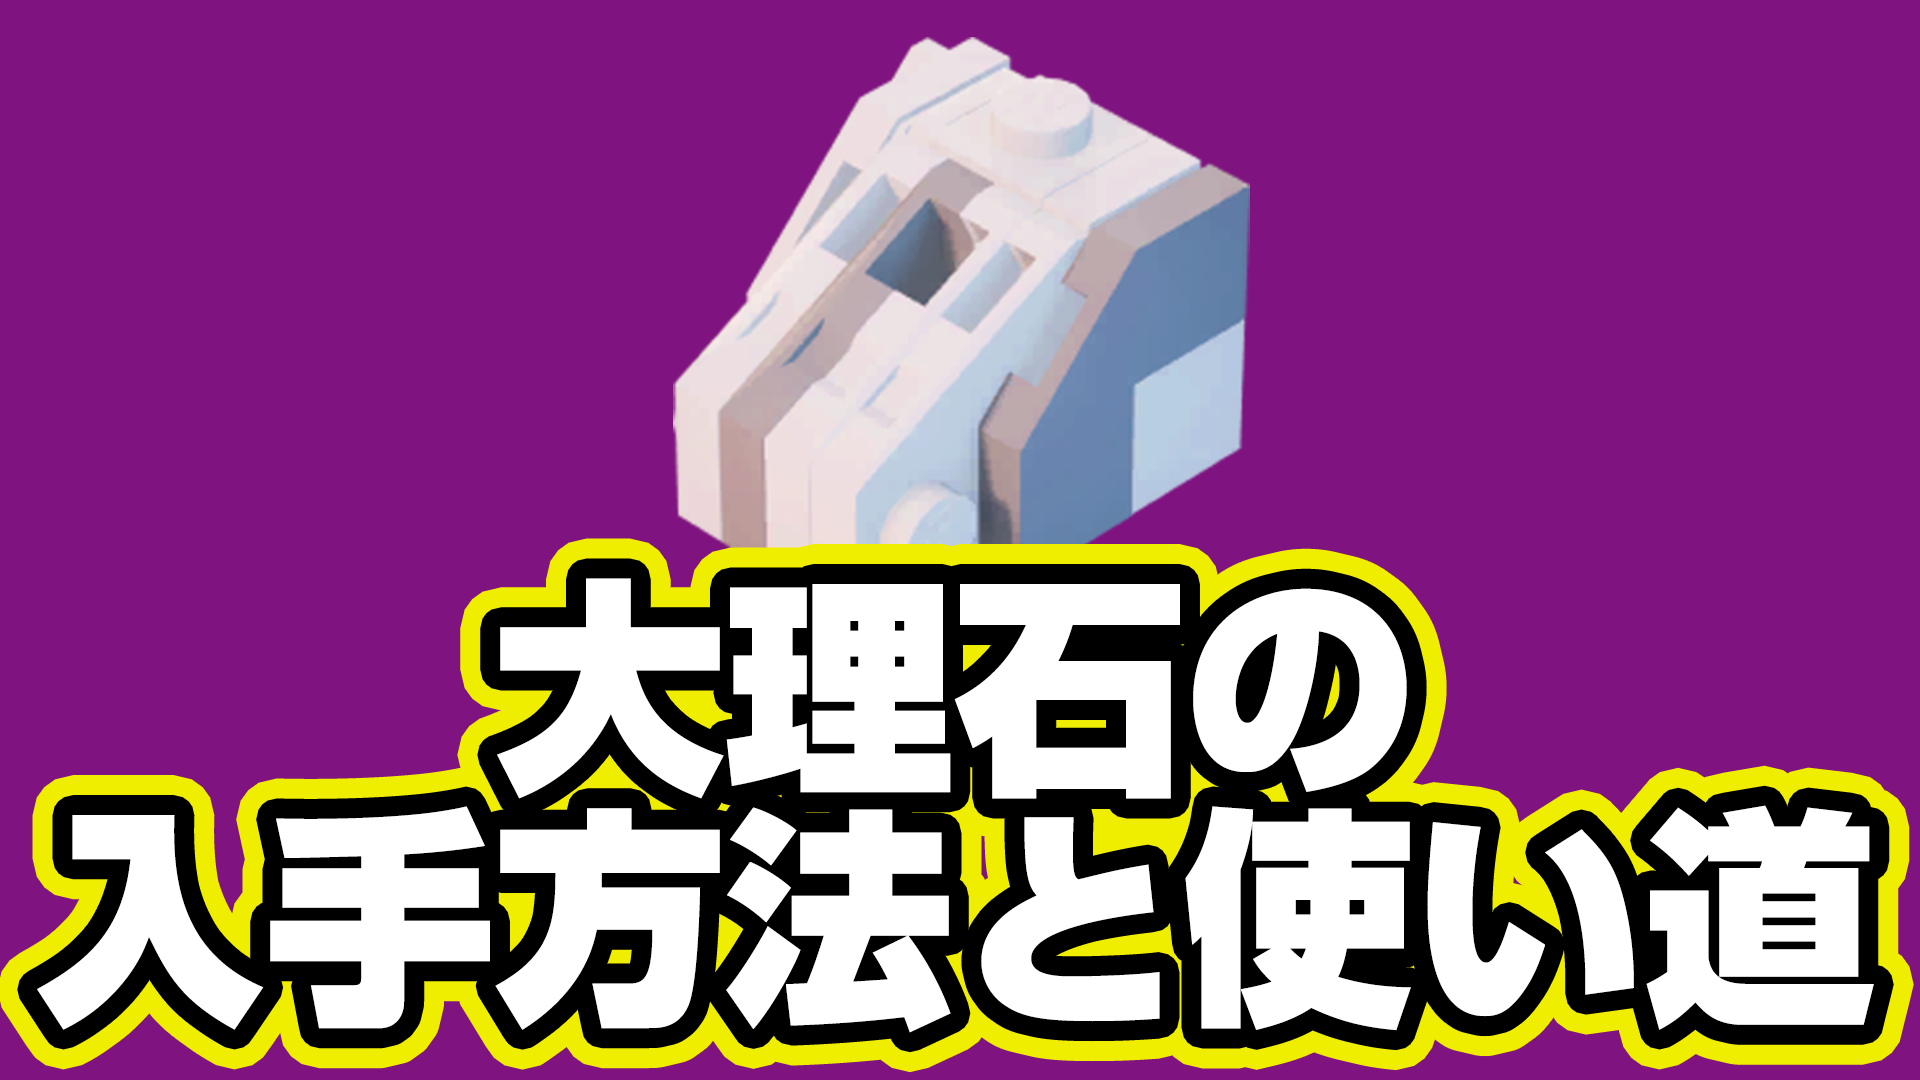 【レゴフォートナイト】大理石の入手方法と使い道【LEGO Fortnite】